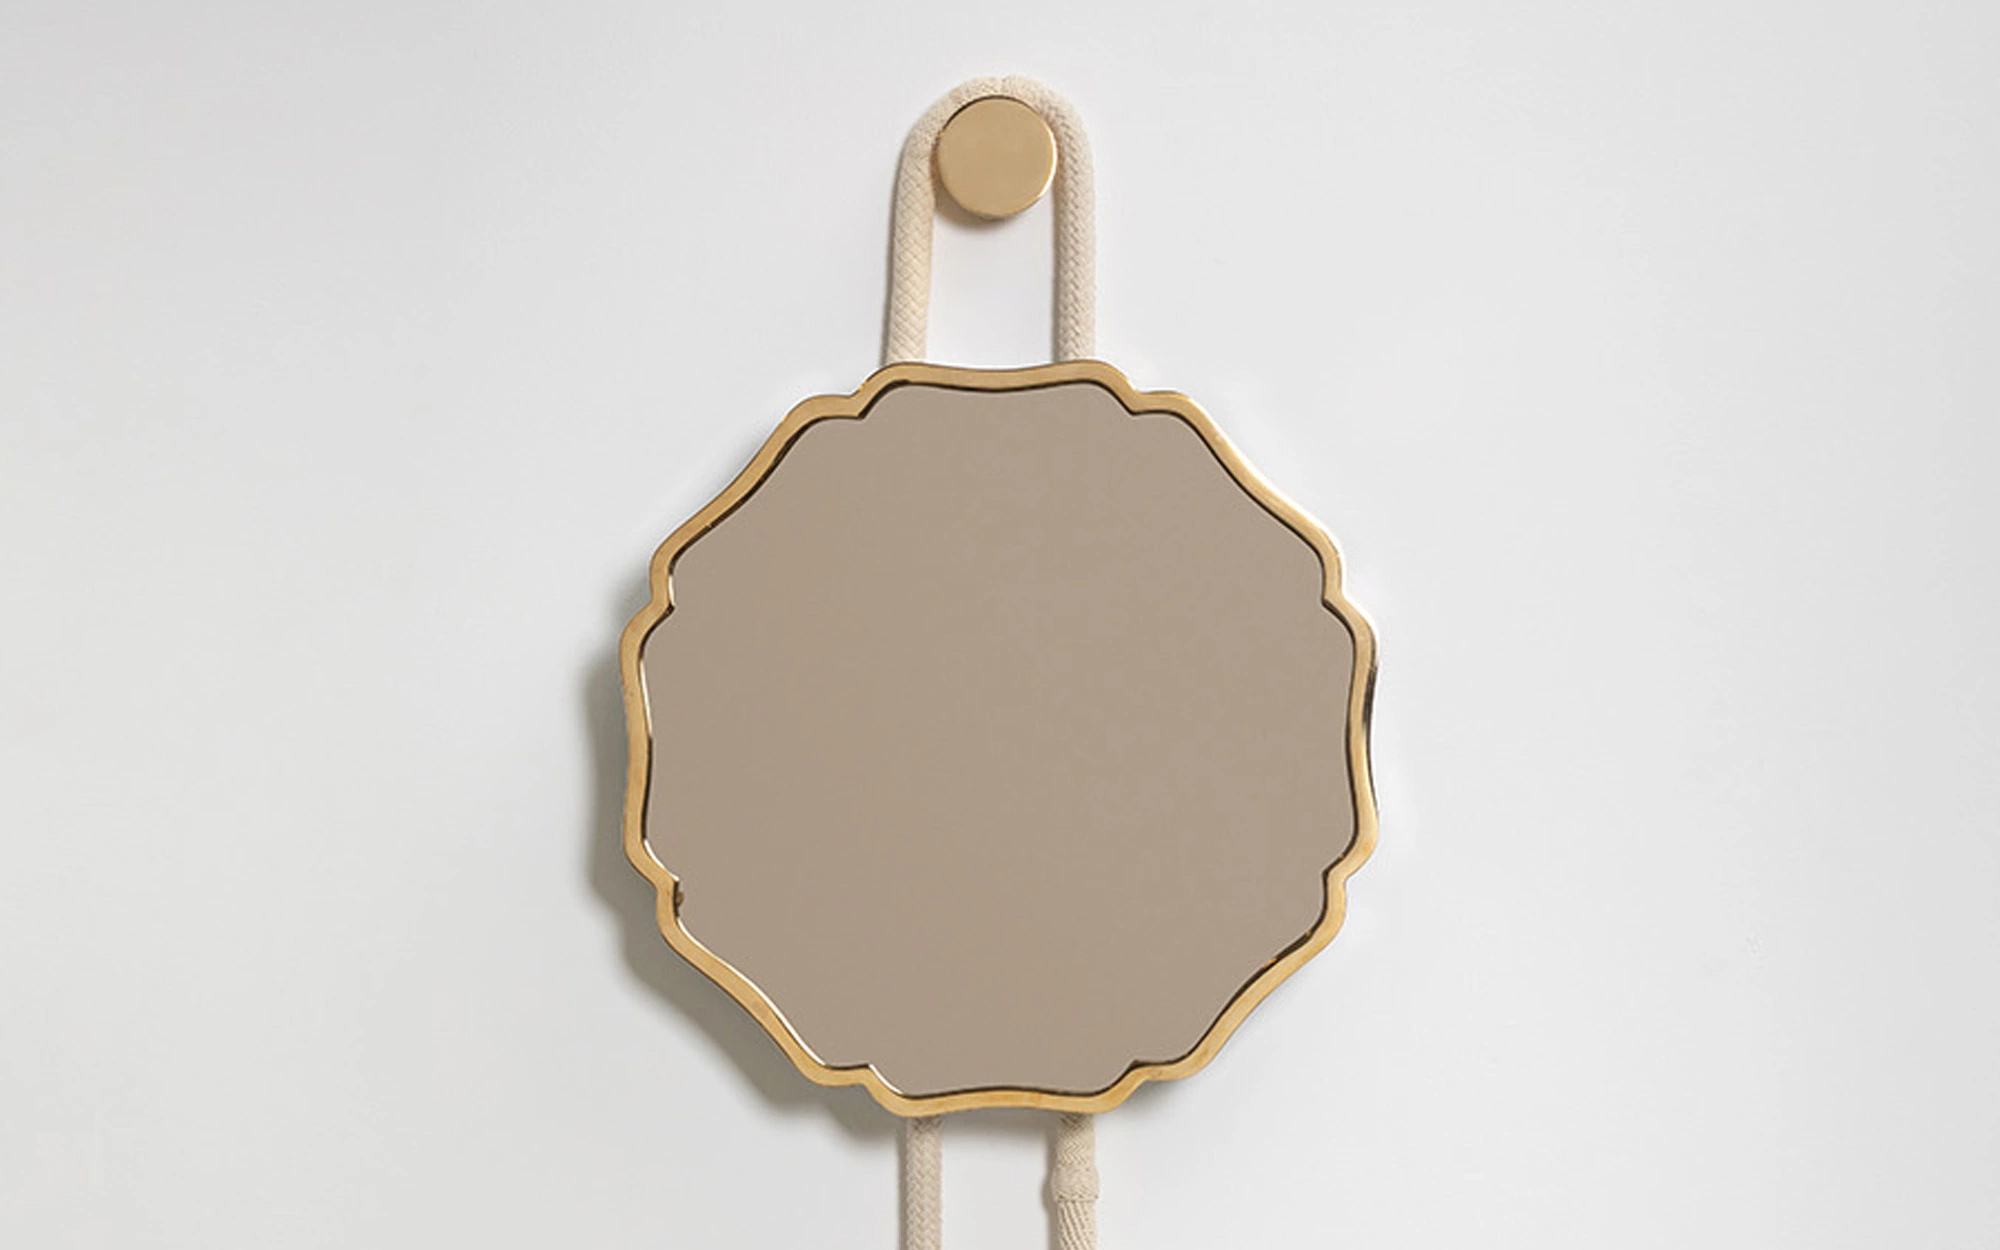 Bronze Mirror 1 - Front - Lucas Ratton x kamel mennour x Galerie kreo x Jacques Lacoste @Saint-Tropez.